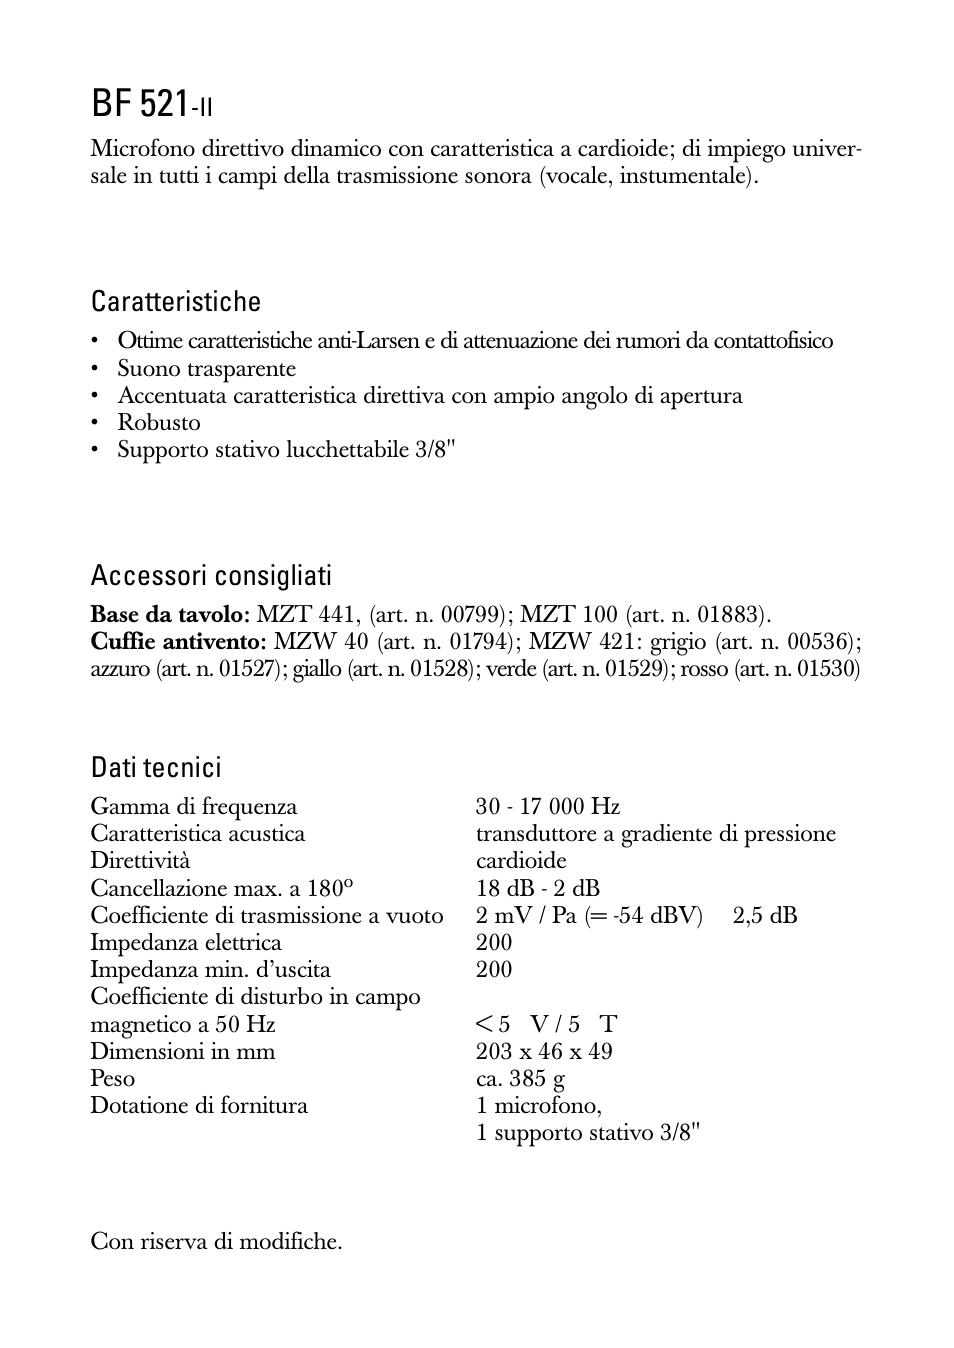 Istruzioni per l'uso, Bf 521, Caratteristiche | Accessori consigliati, Dati tecnici | Sennheiser BF 521-II User Manual | Page 5 / 12